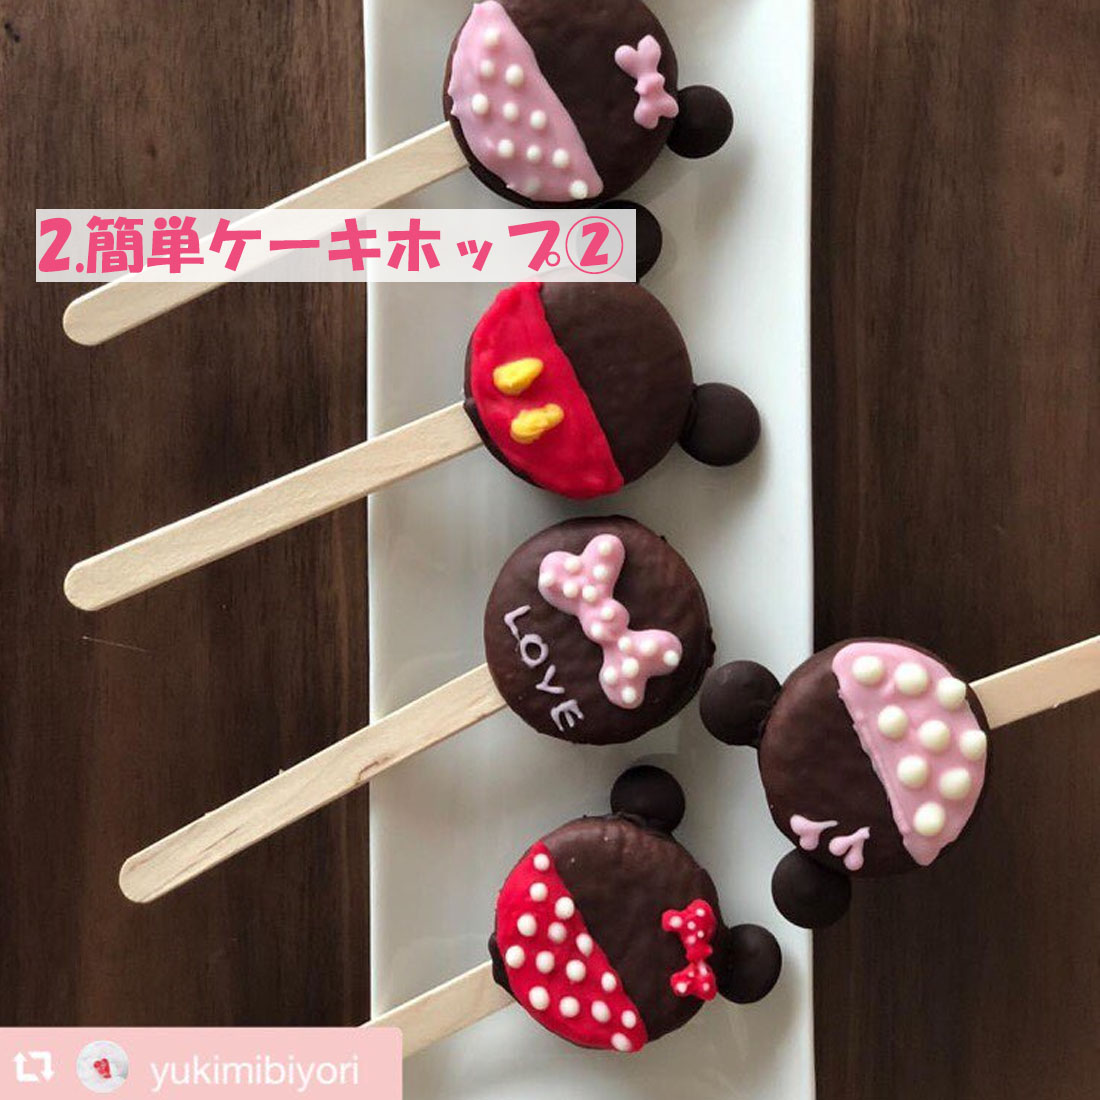 バレンタインに贈る かわいい手作りお菓子5選